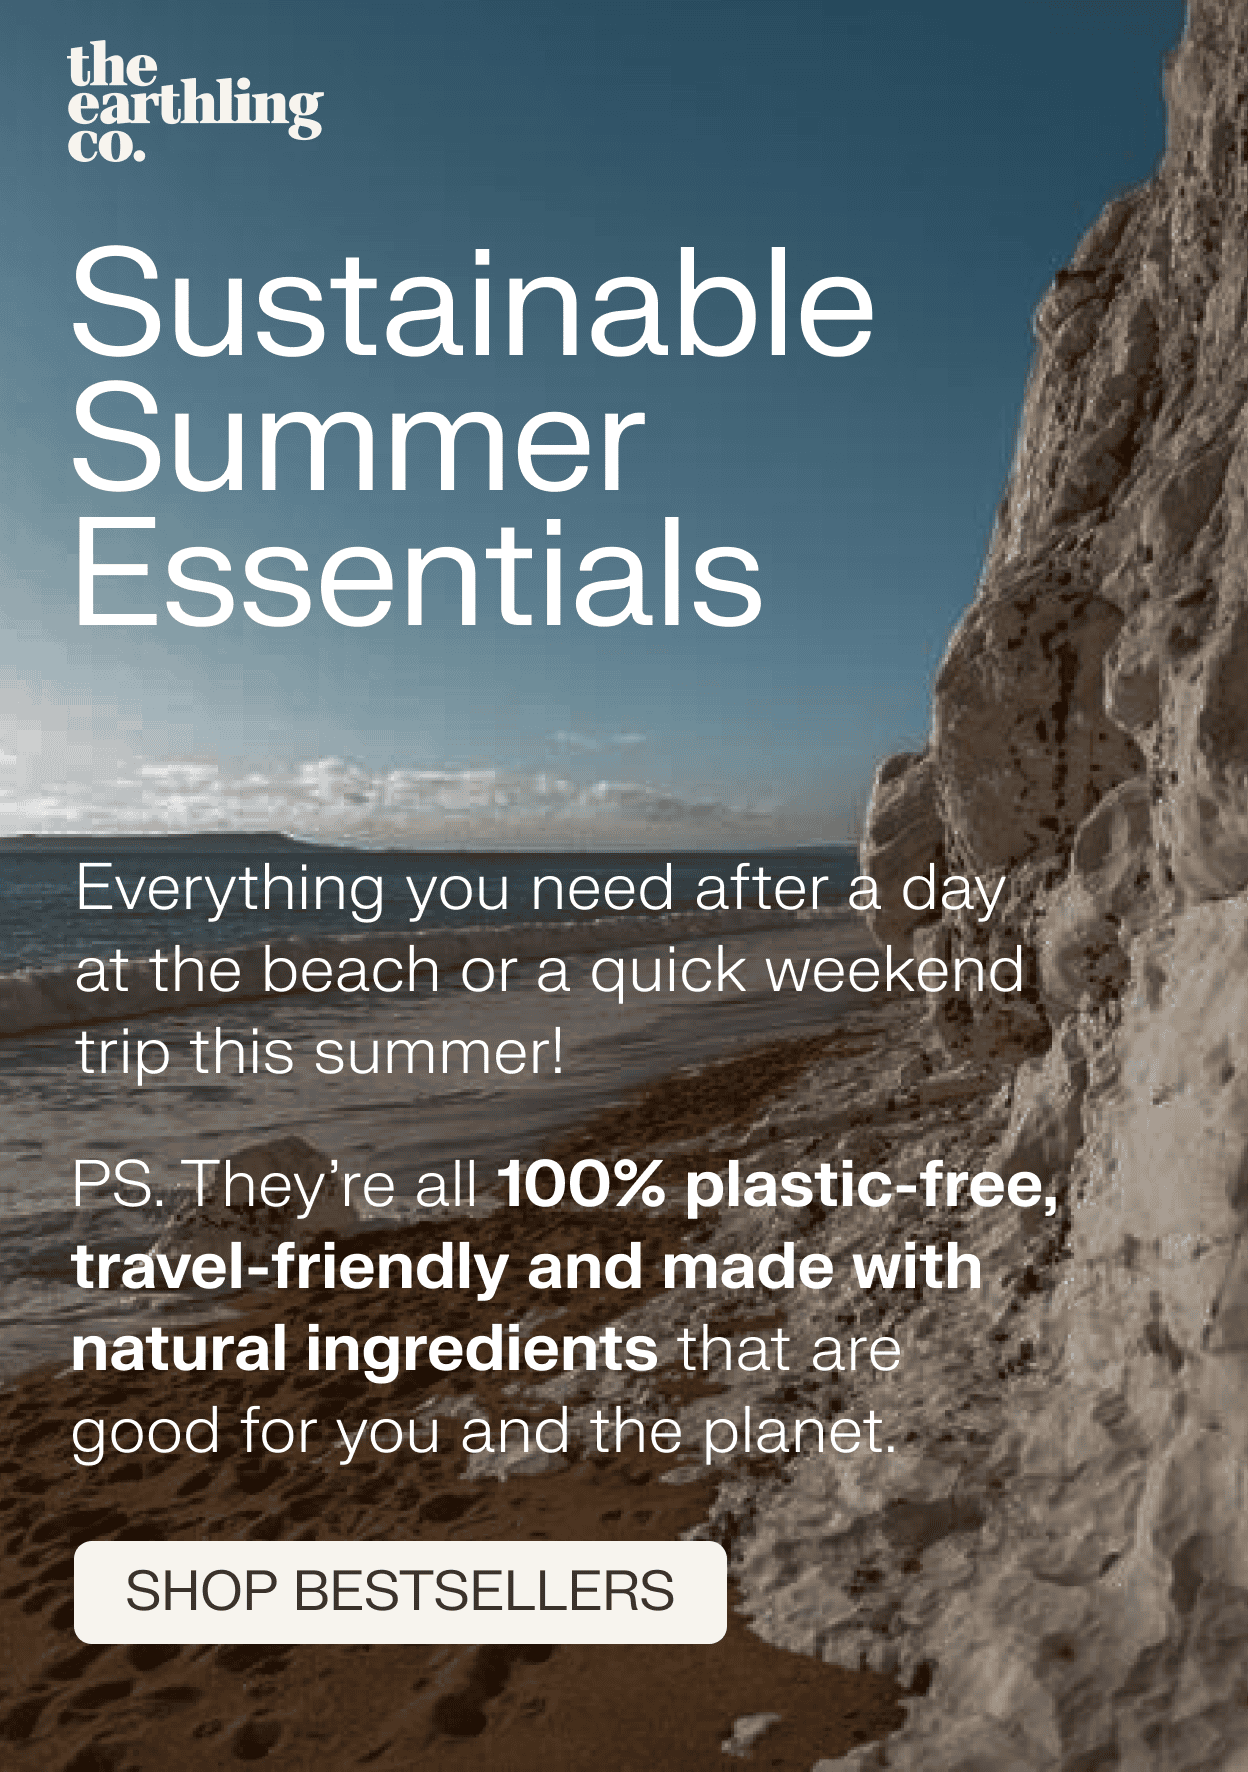 Sustainable summer essentials